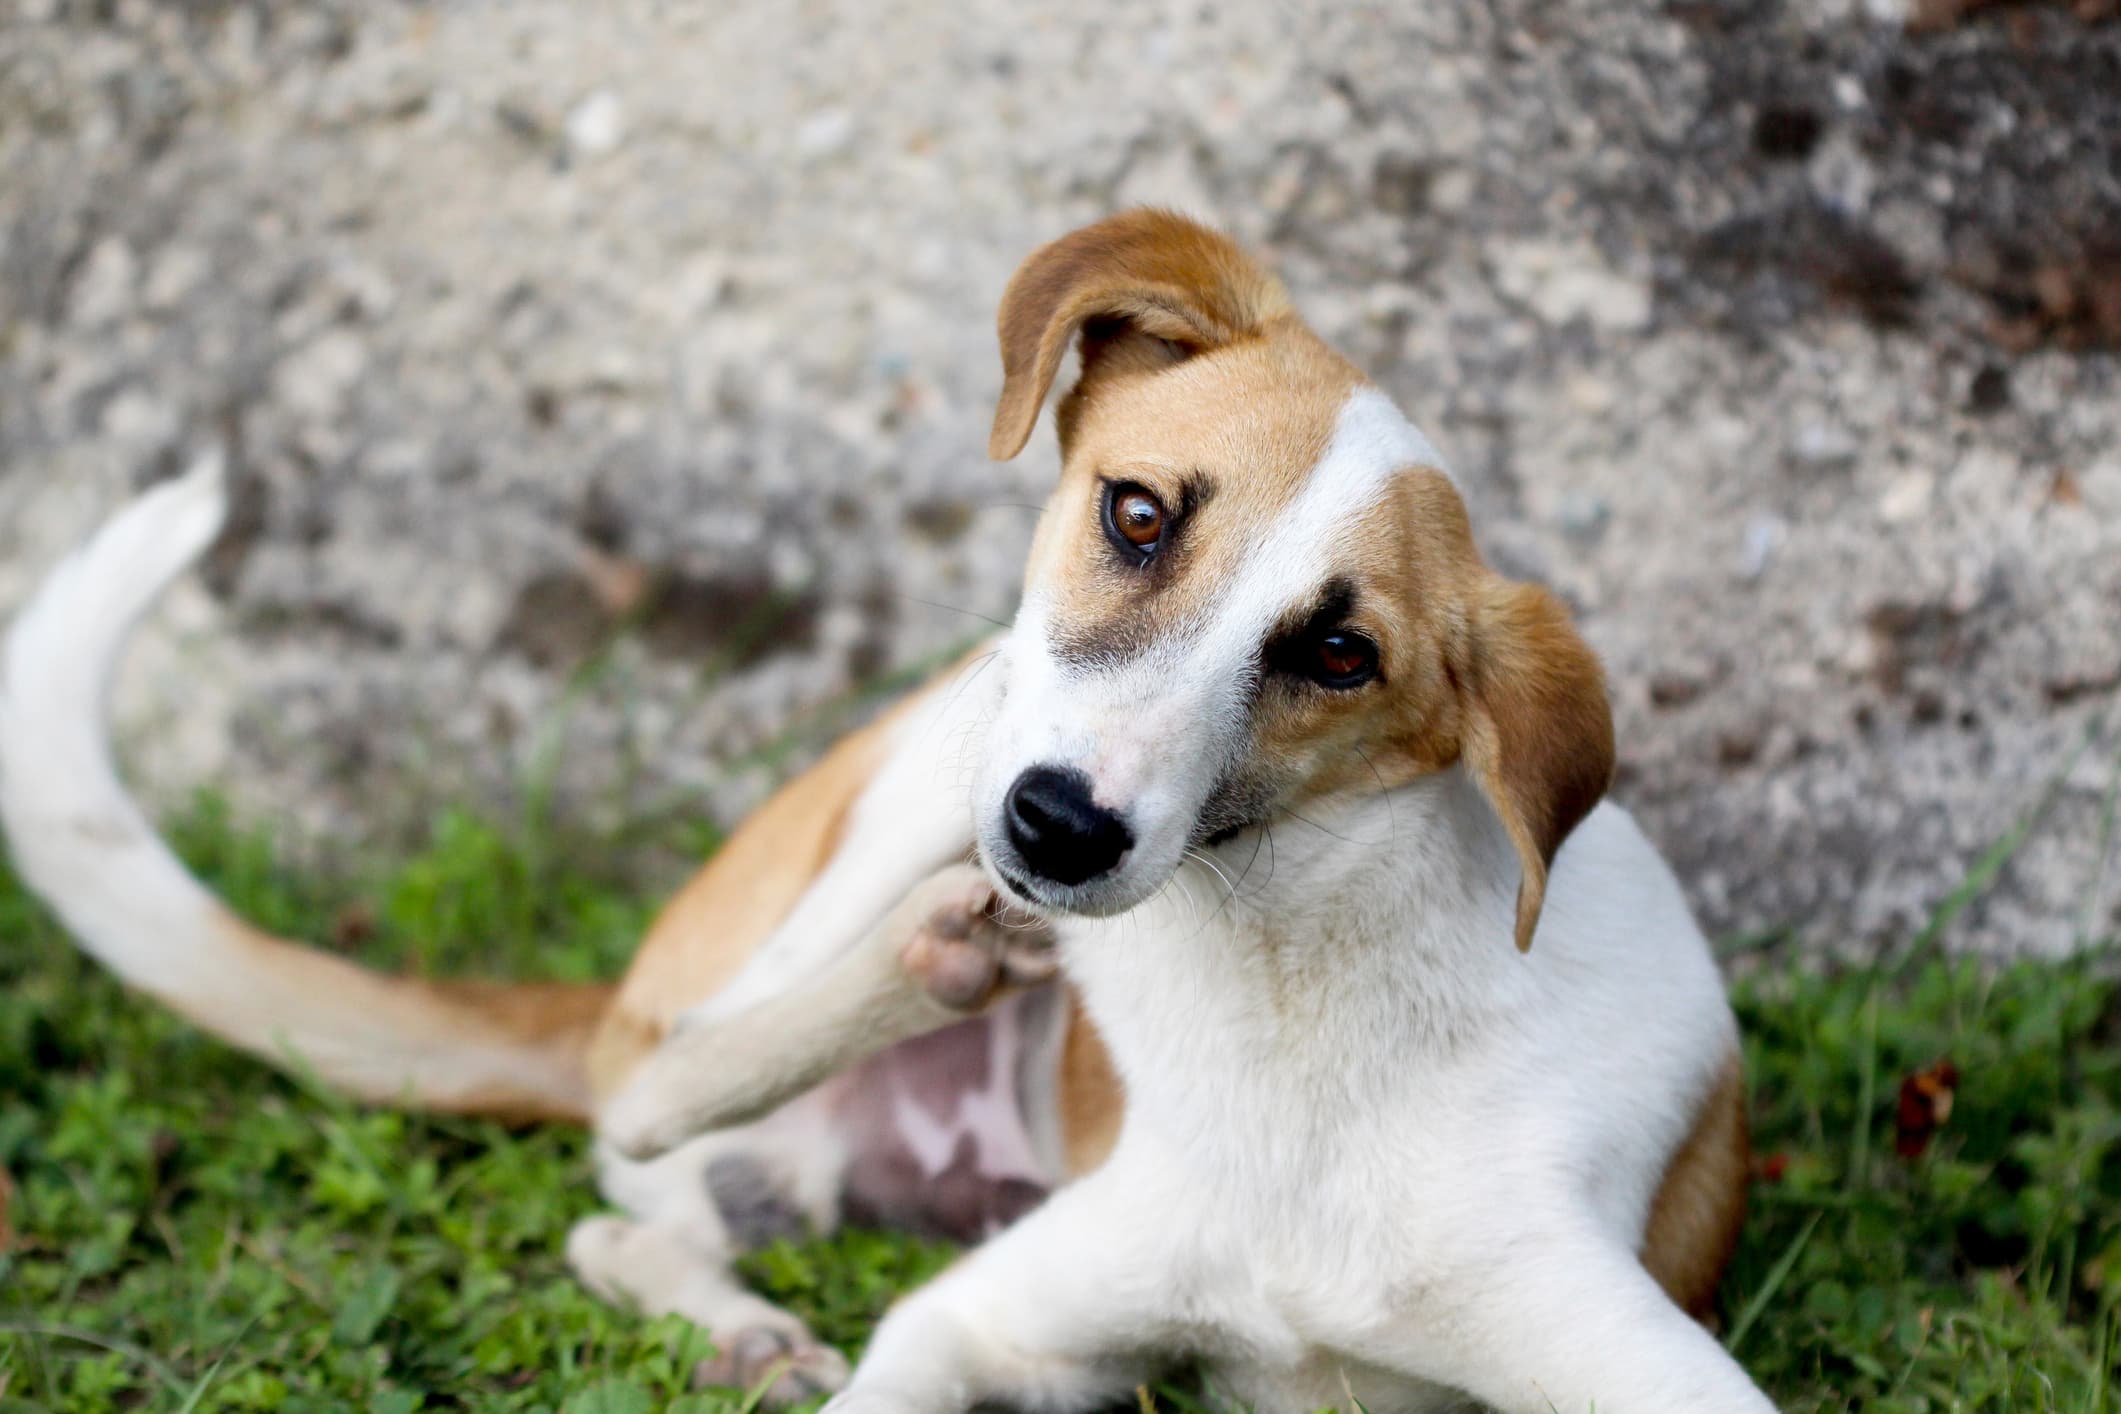 Um cão de pelo branco e manchas caramelo sentado na grama se coçando olhando fixamente para a câmera em fundo desfocado.